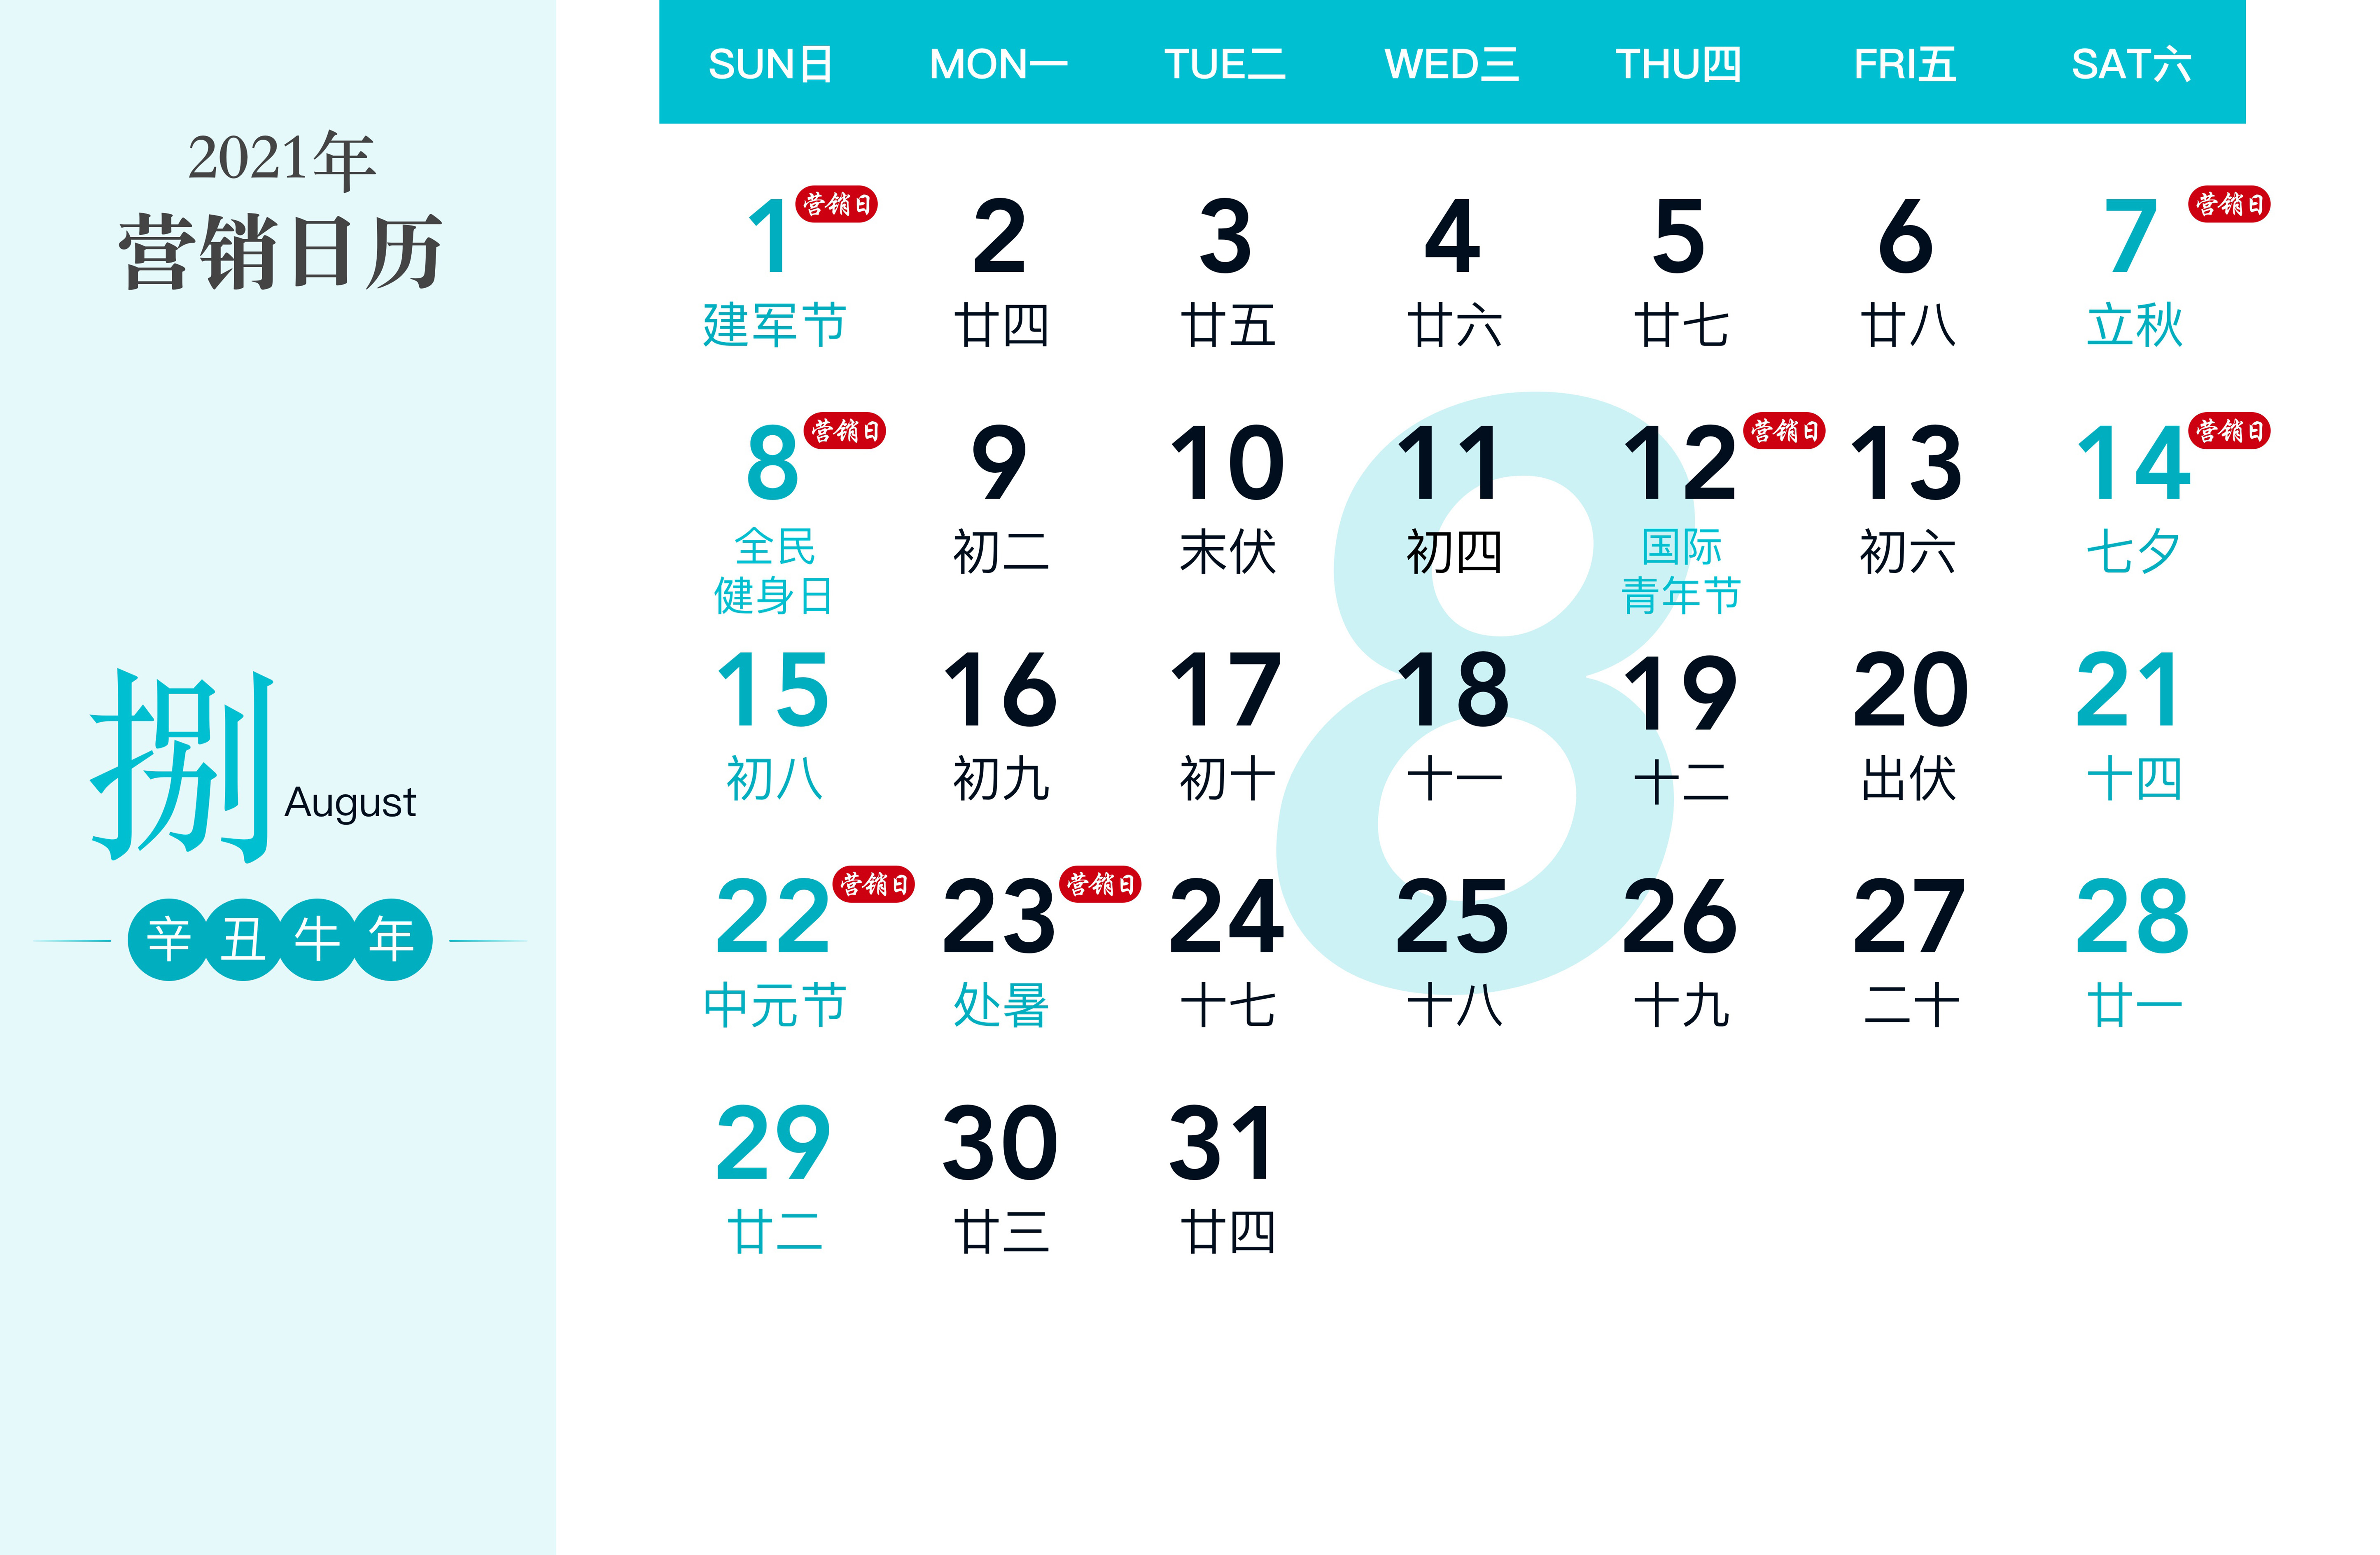 过硬2021营销日历：品牌借势营销神器，覆盖全年热点话题！